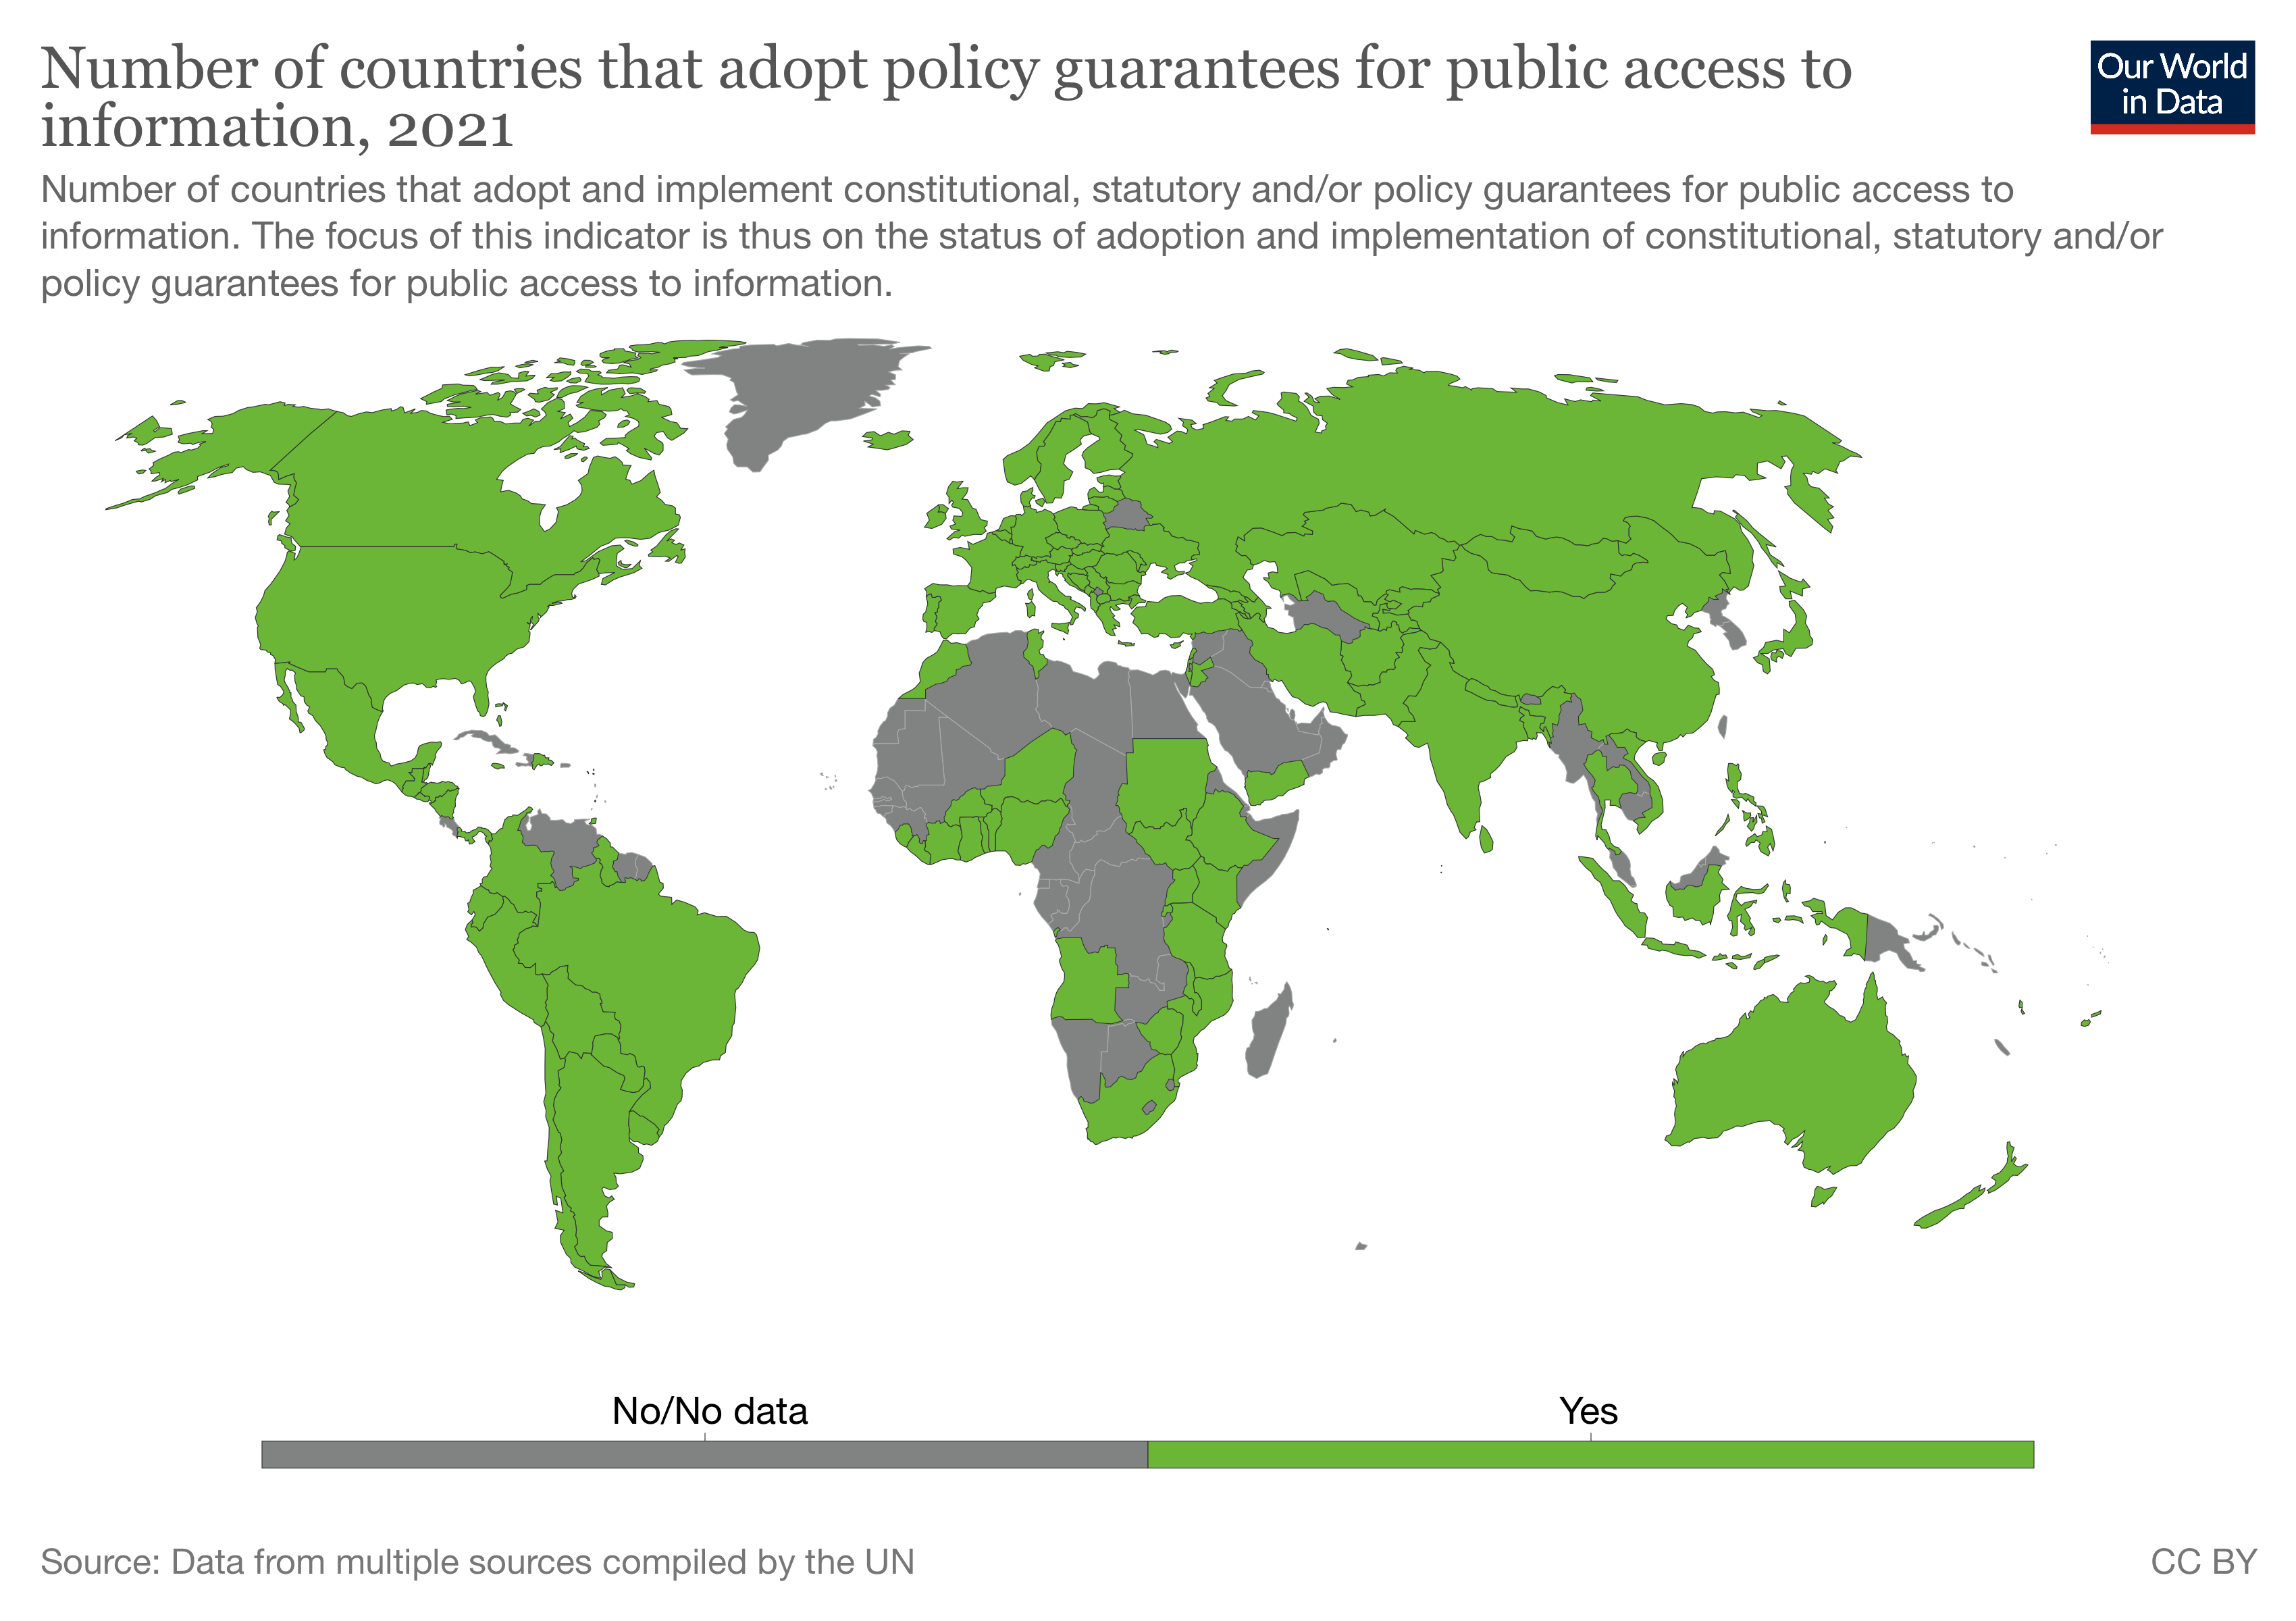 Kartta, jossa värjätty vihreäksi maat, jotka takaavat oikeuden tietoon. Harmaat maat lähinnä Afrikassa ja Aasiassa.